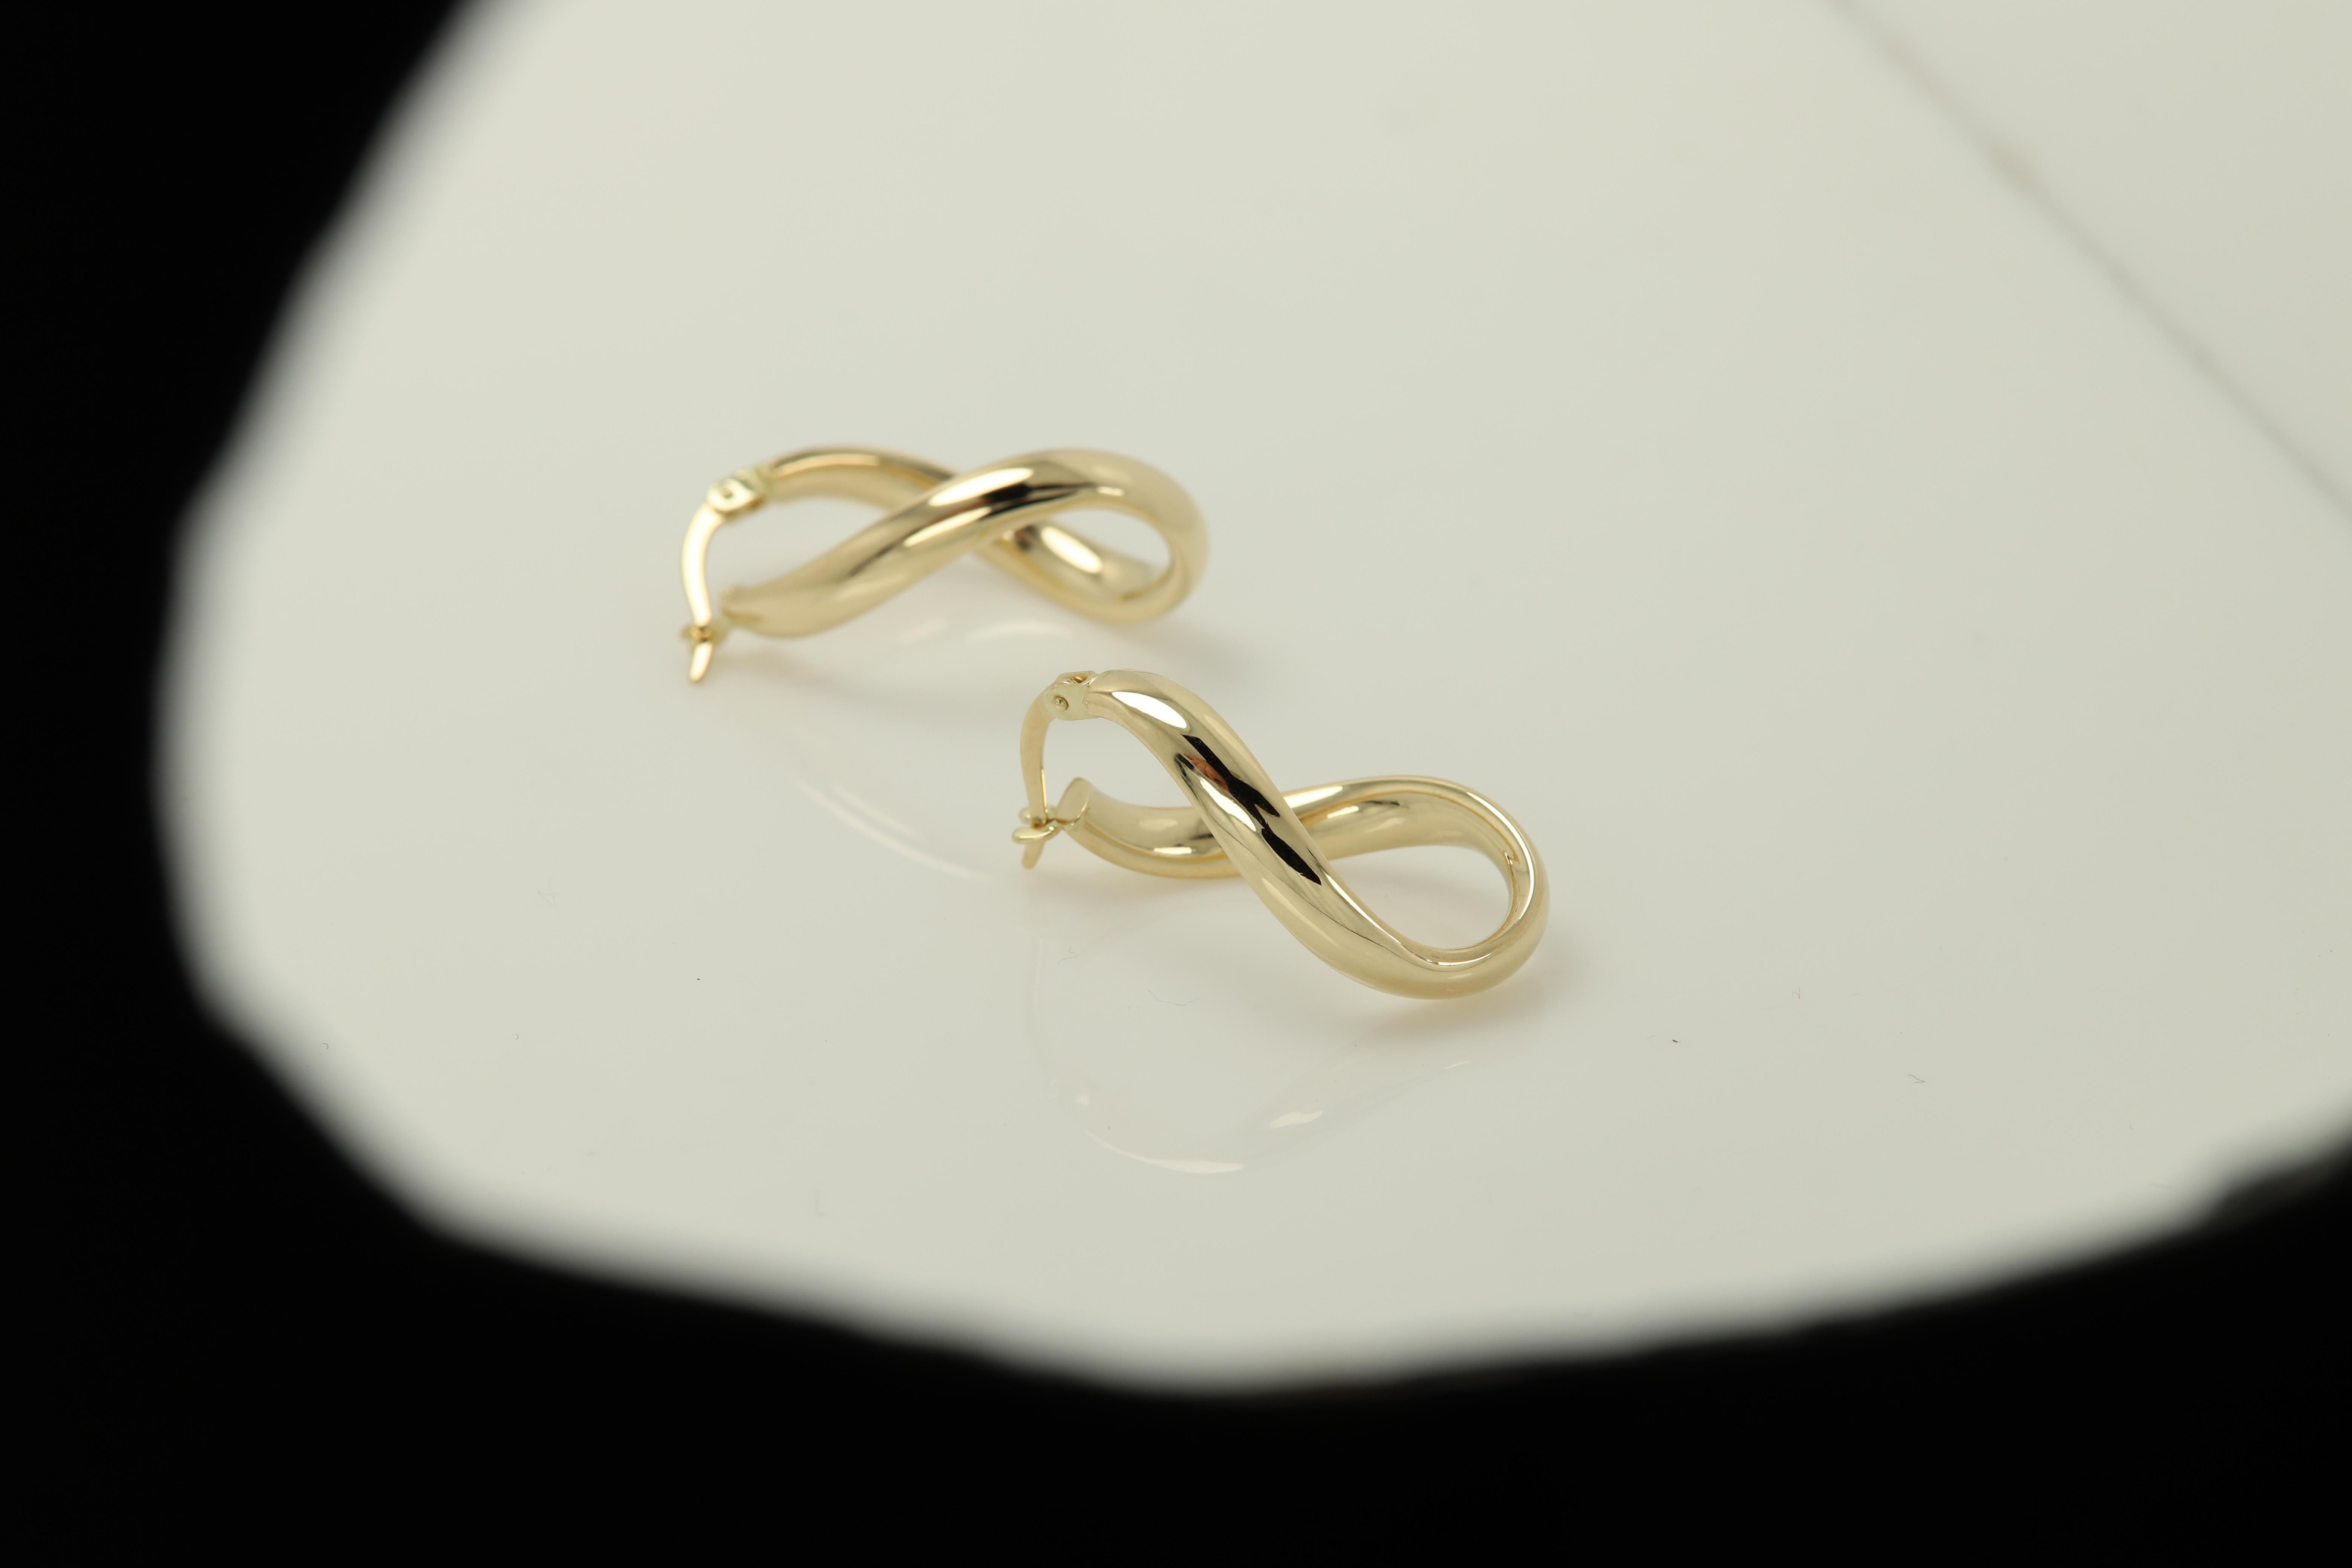 Women's Swirl Italian Hoops 14 Karat Solid Gold Earrings Gold Hoops Artistic Earrings For Sale